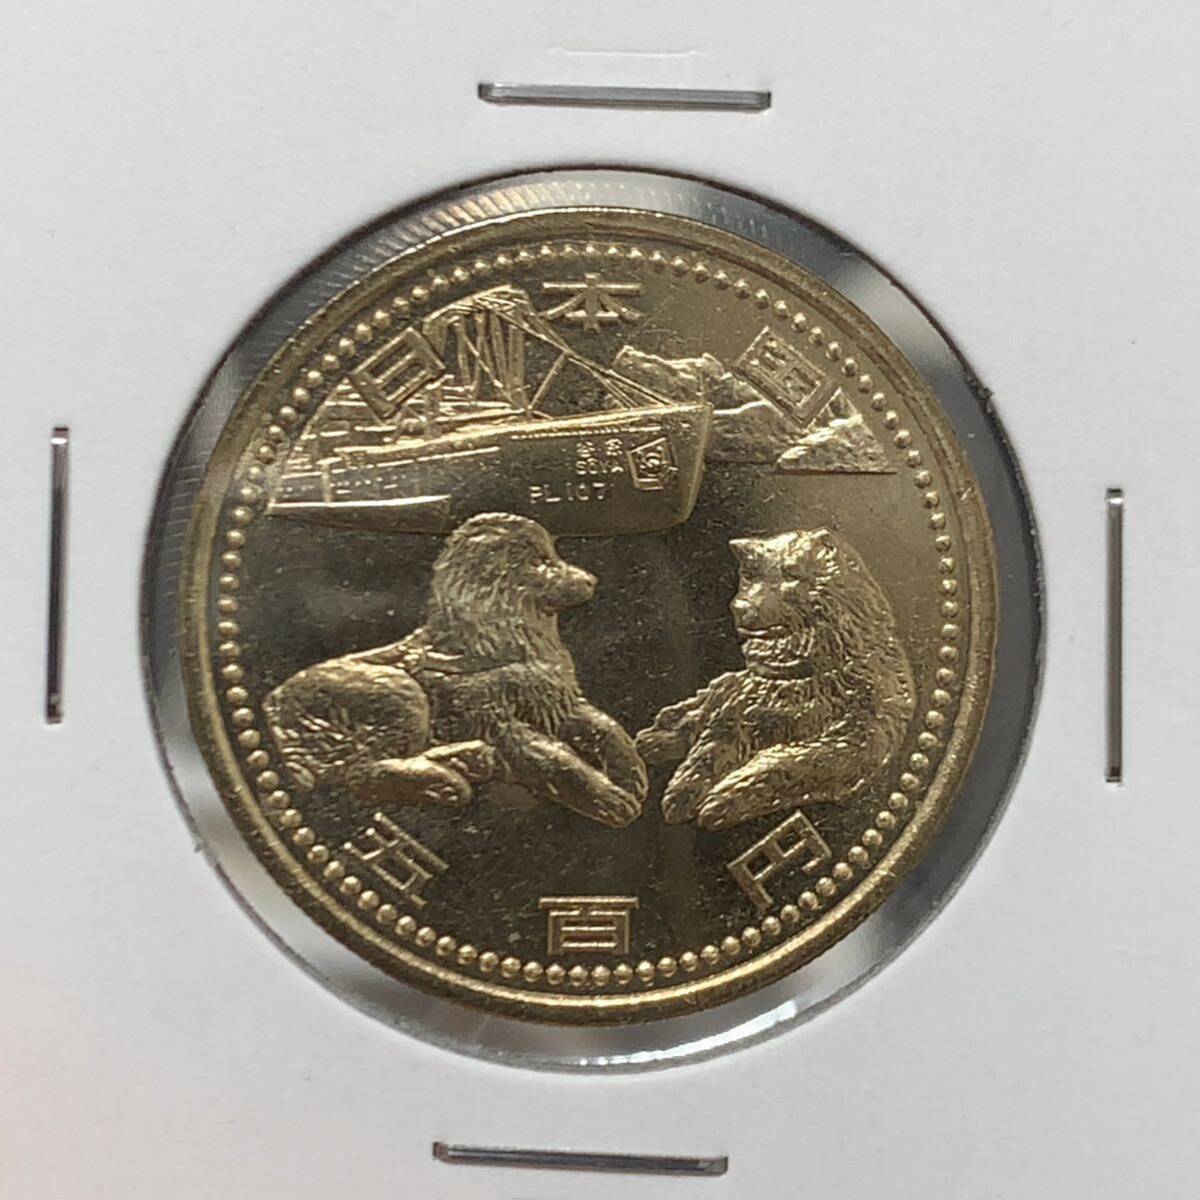 平成19年 南極地域観測50年 記念500円硬貨 ミントセット出し 未使用の画像1